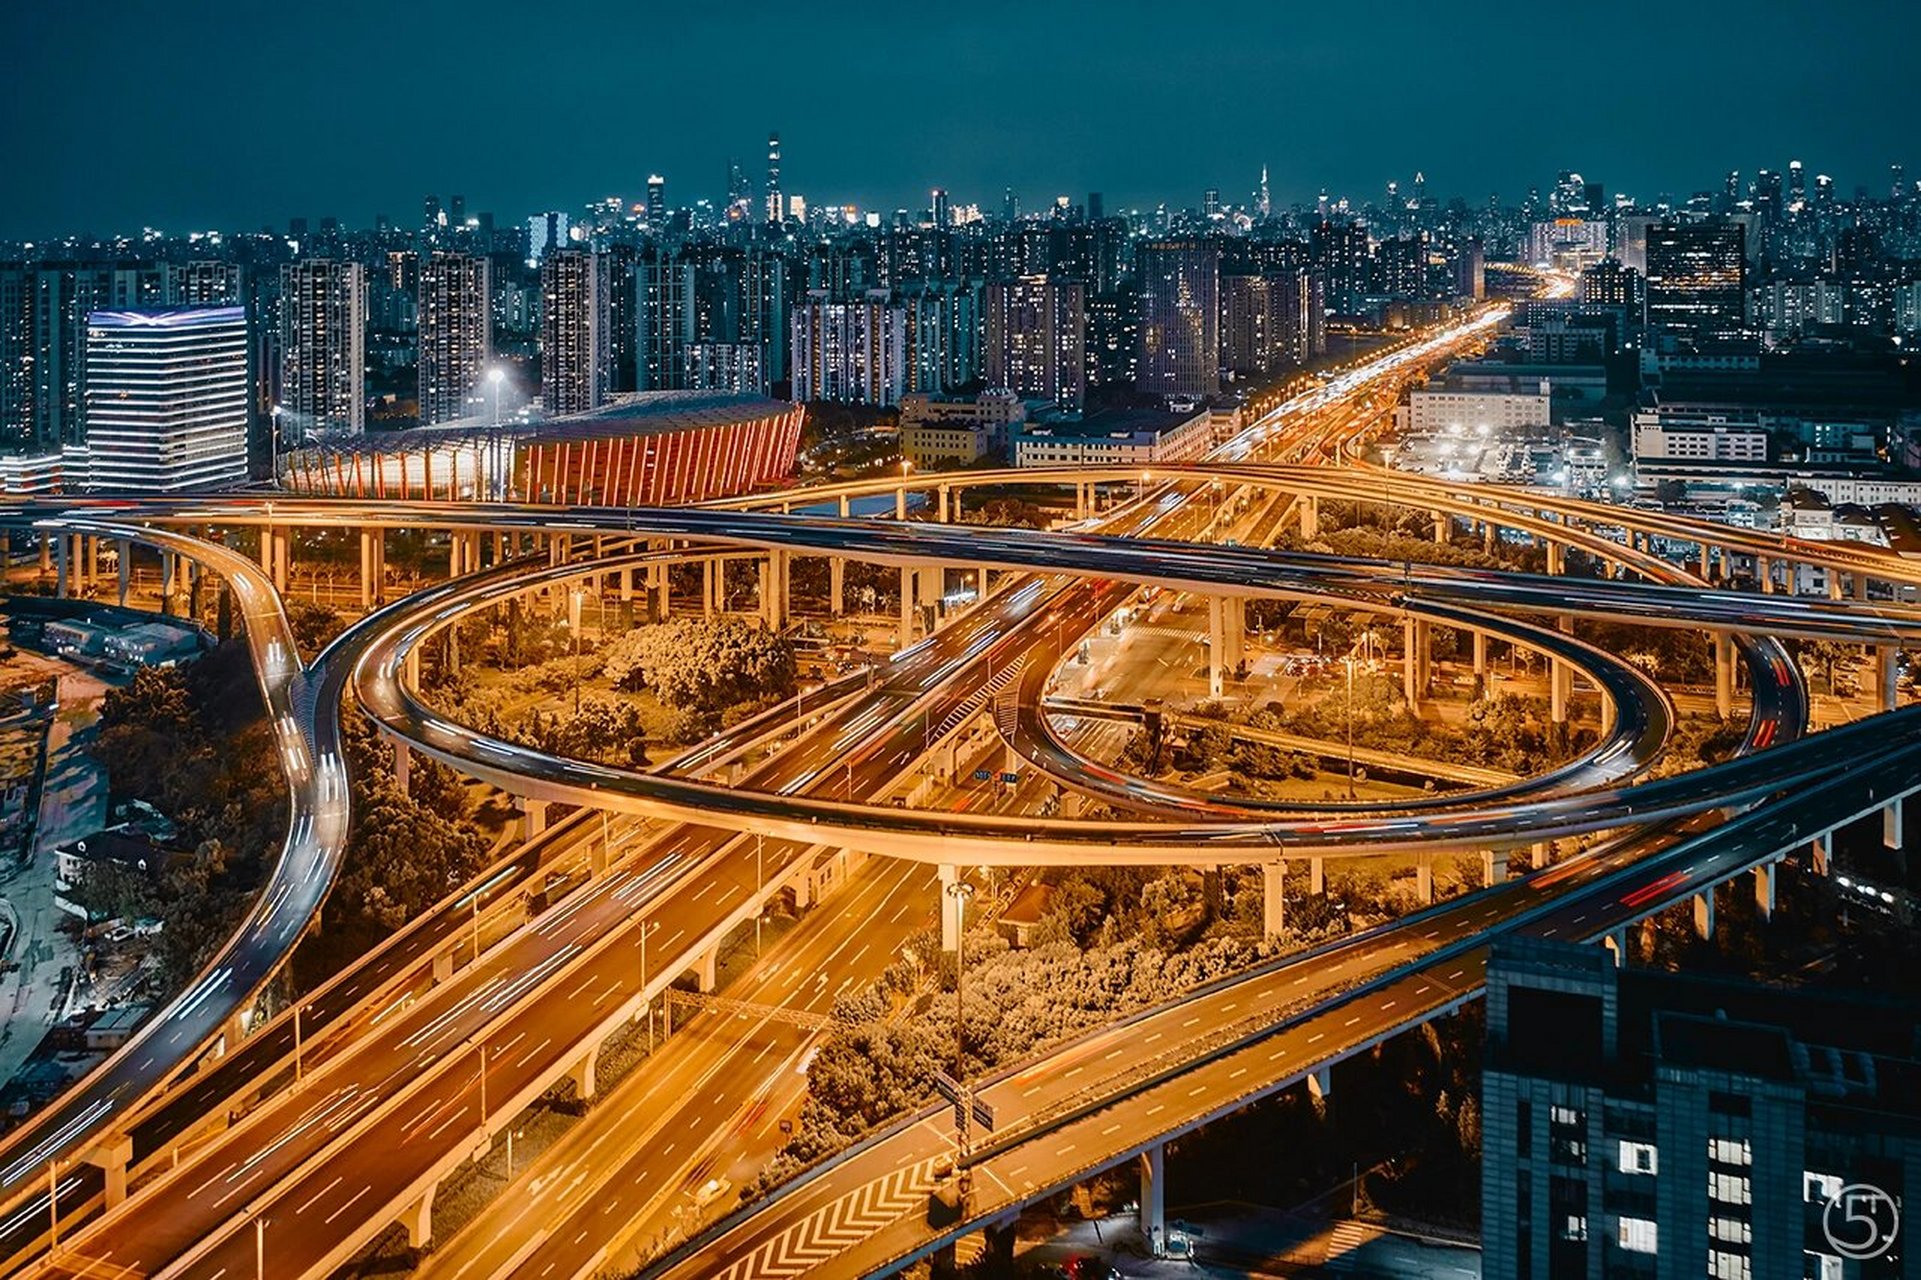 上海南浦大桥立交桥图片